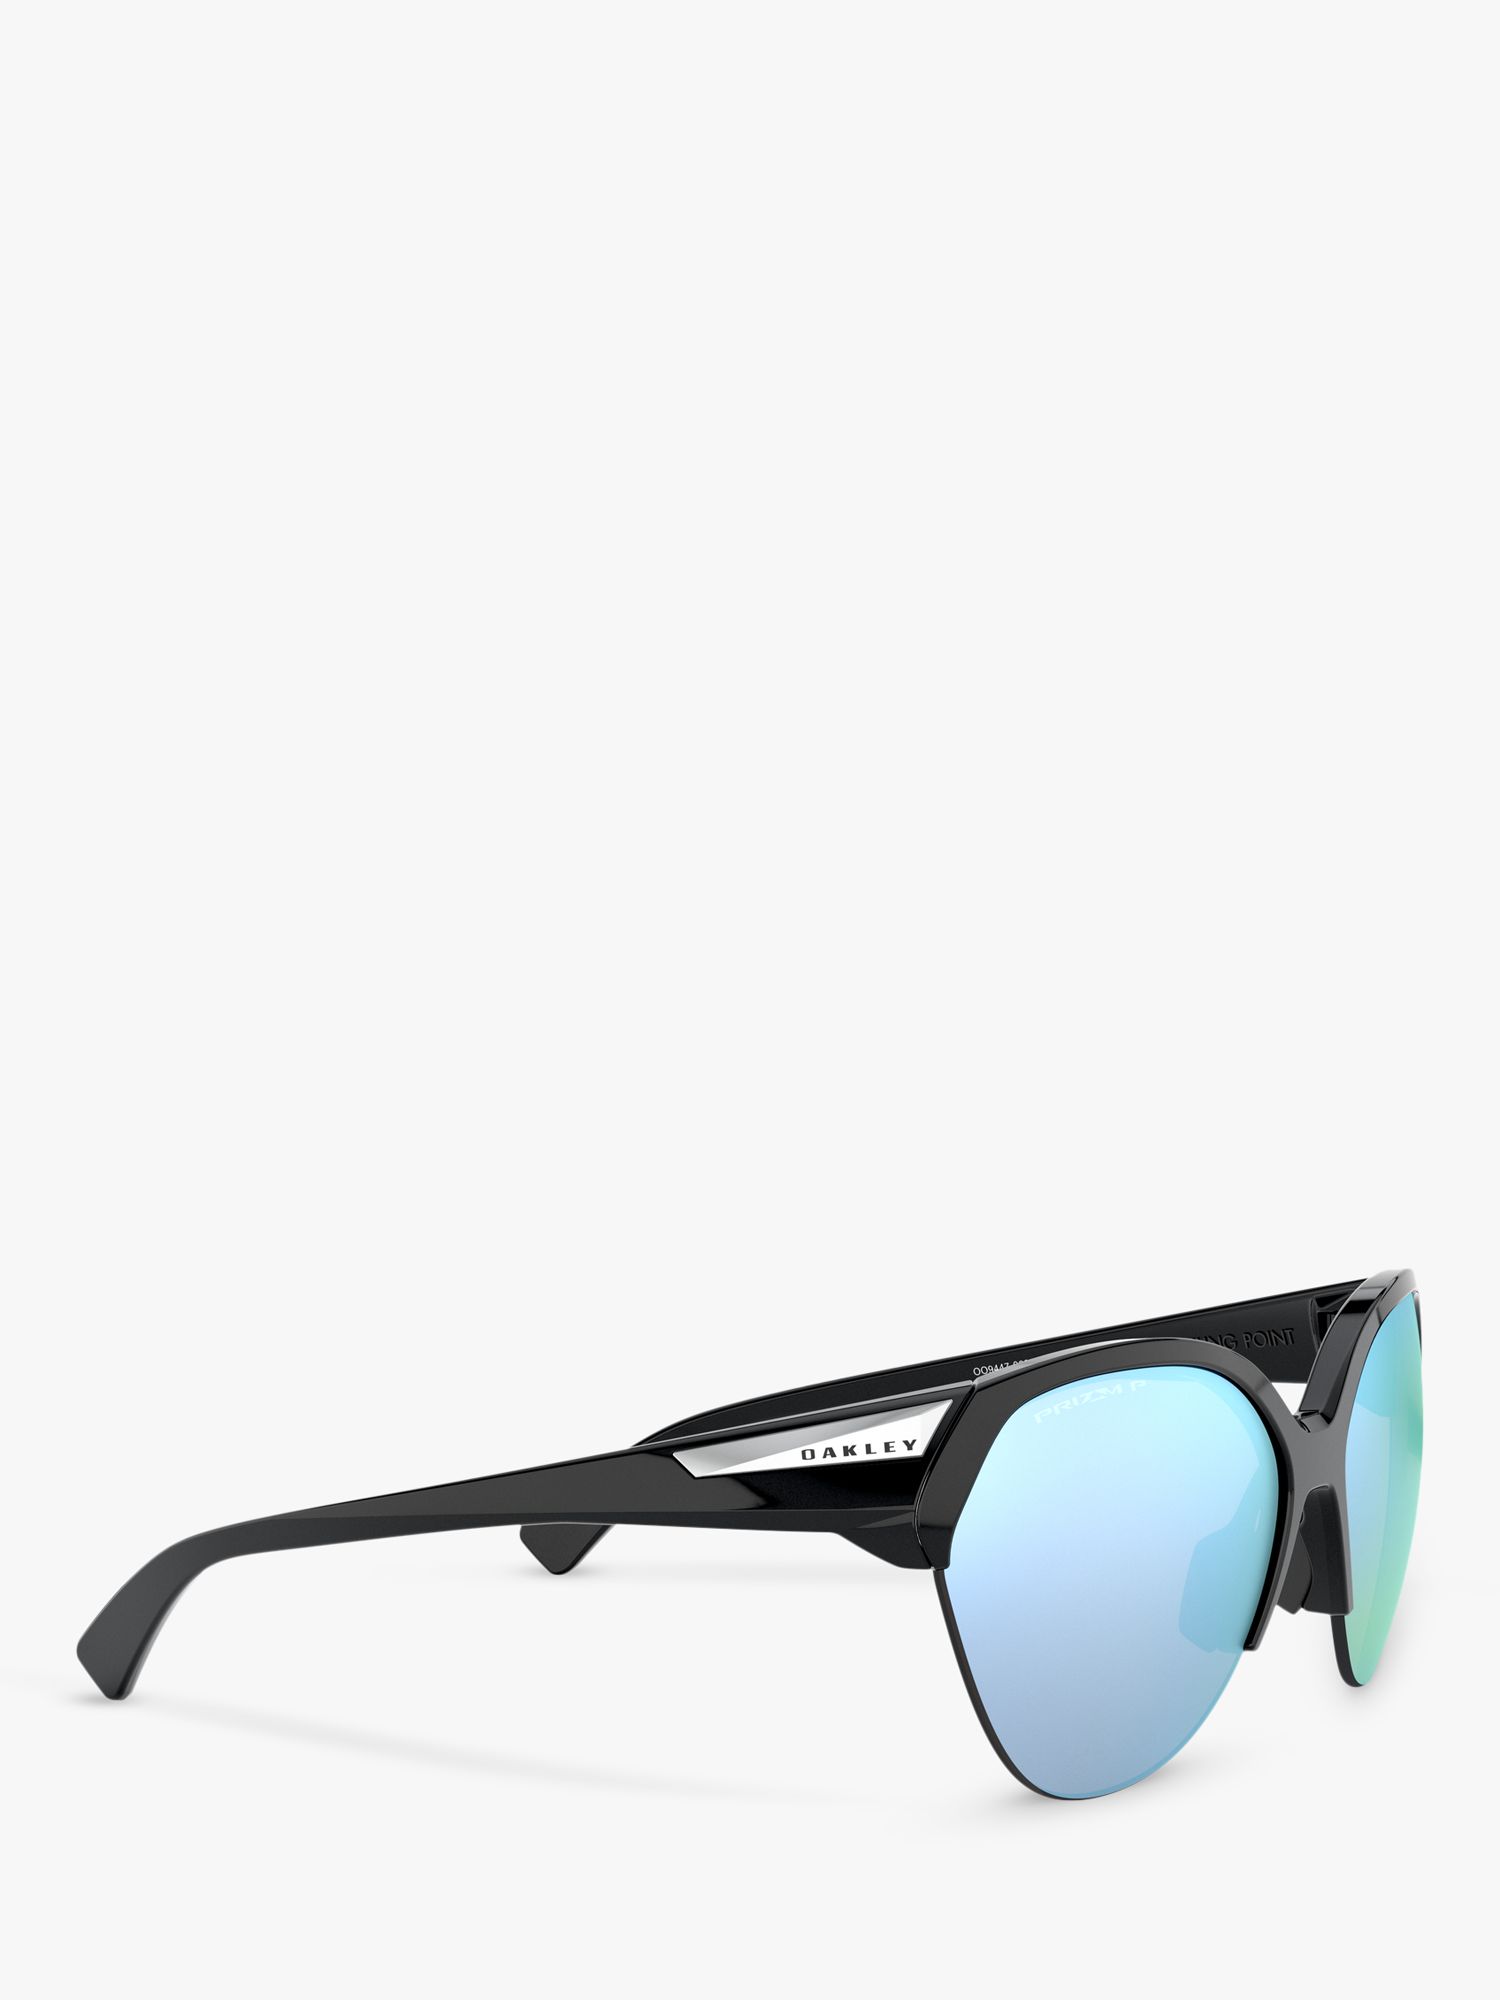 Oakley OO9447 Women's Oval Sunglasses, Black/Blue